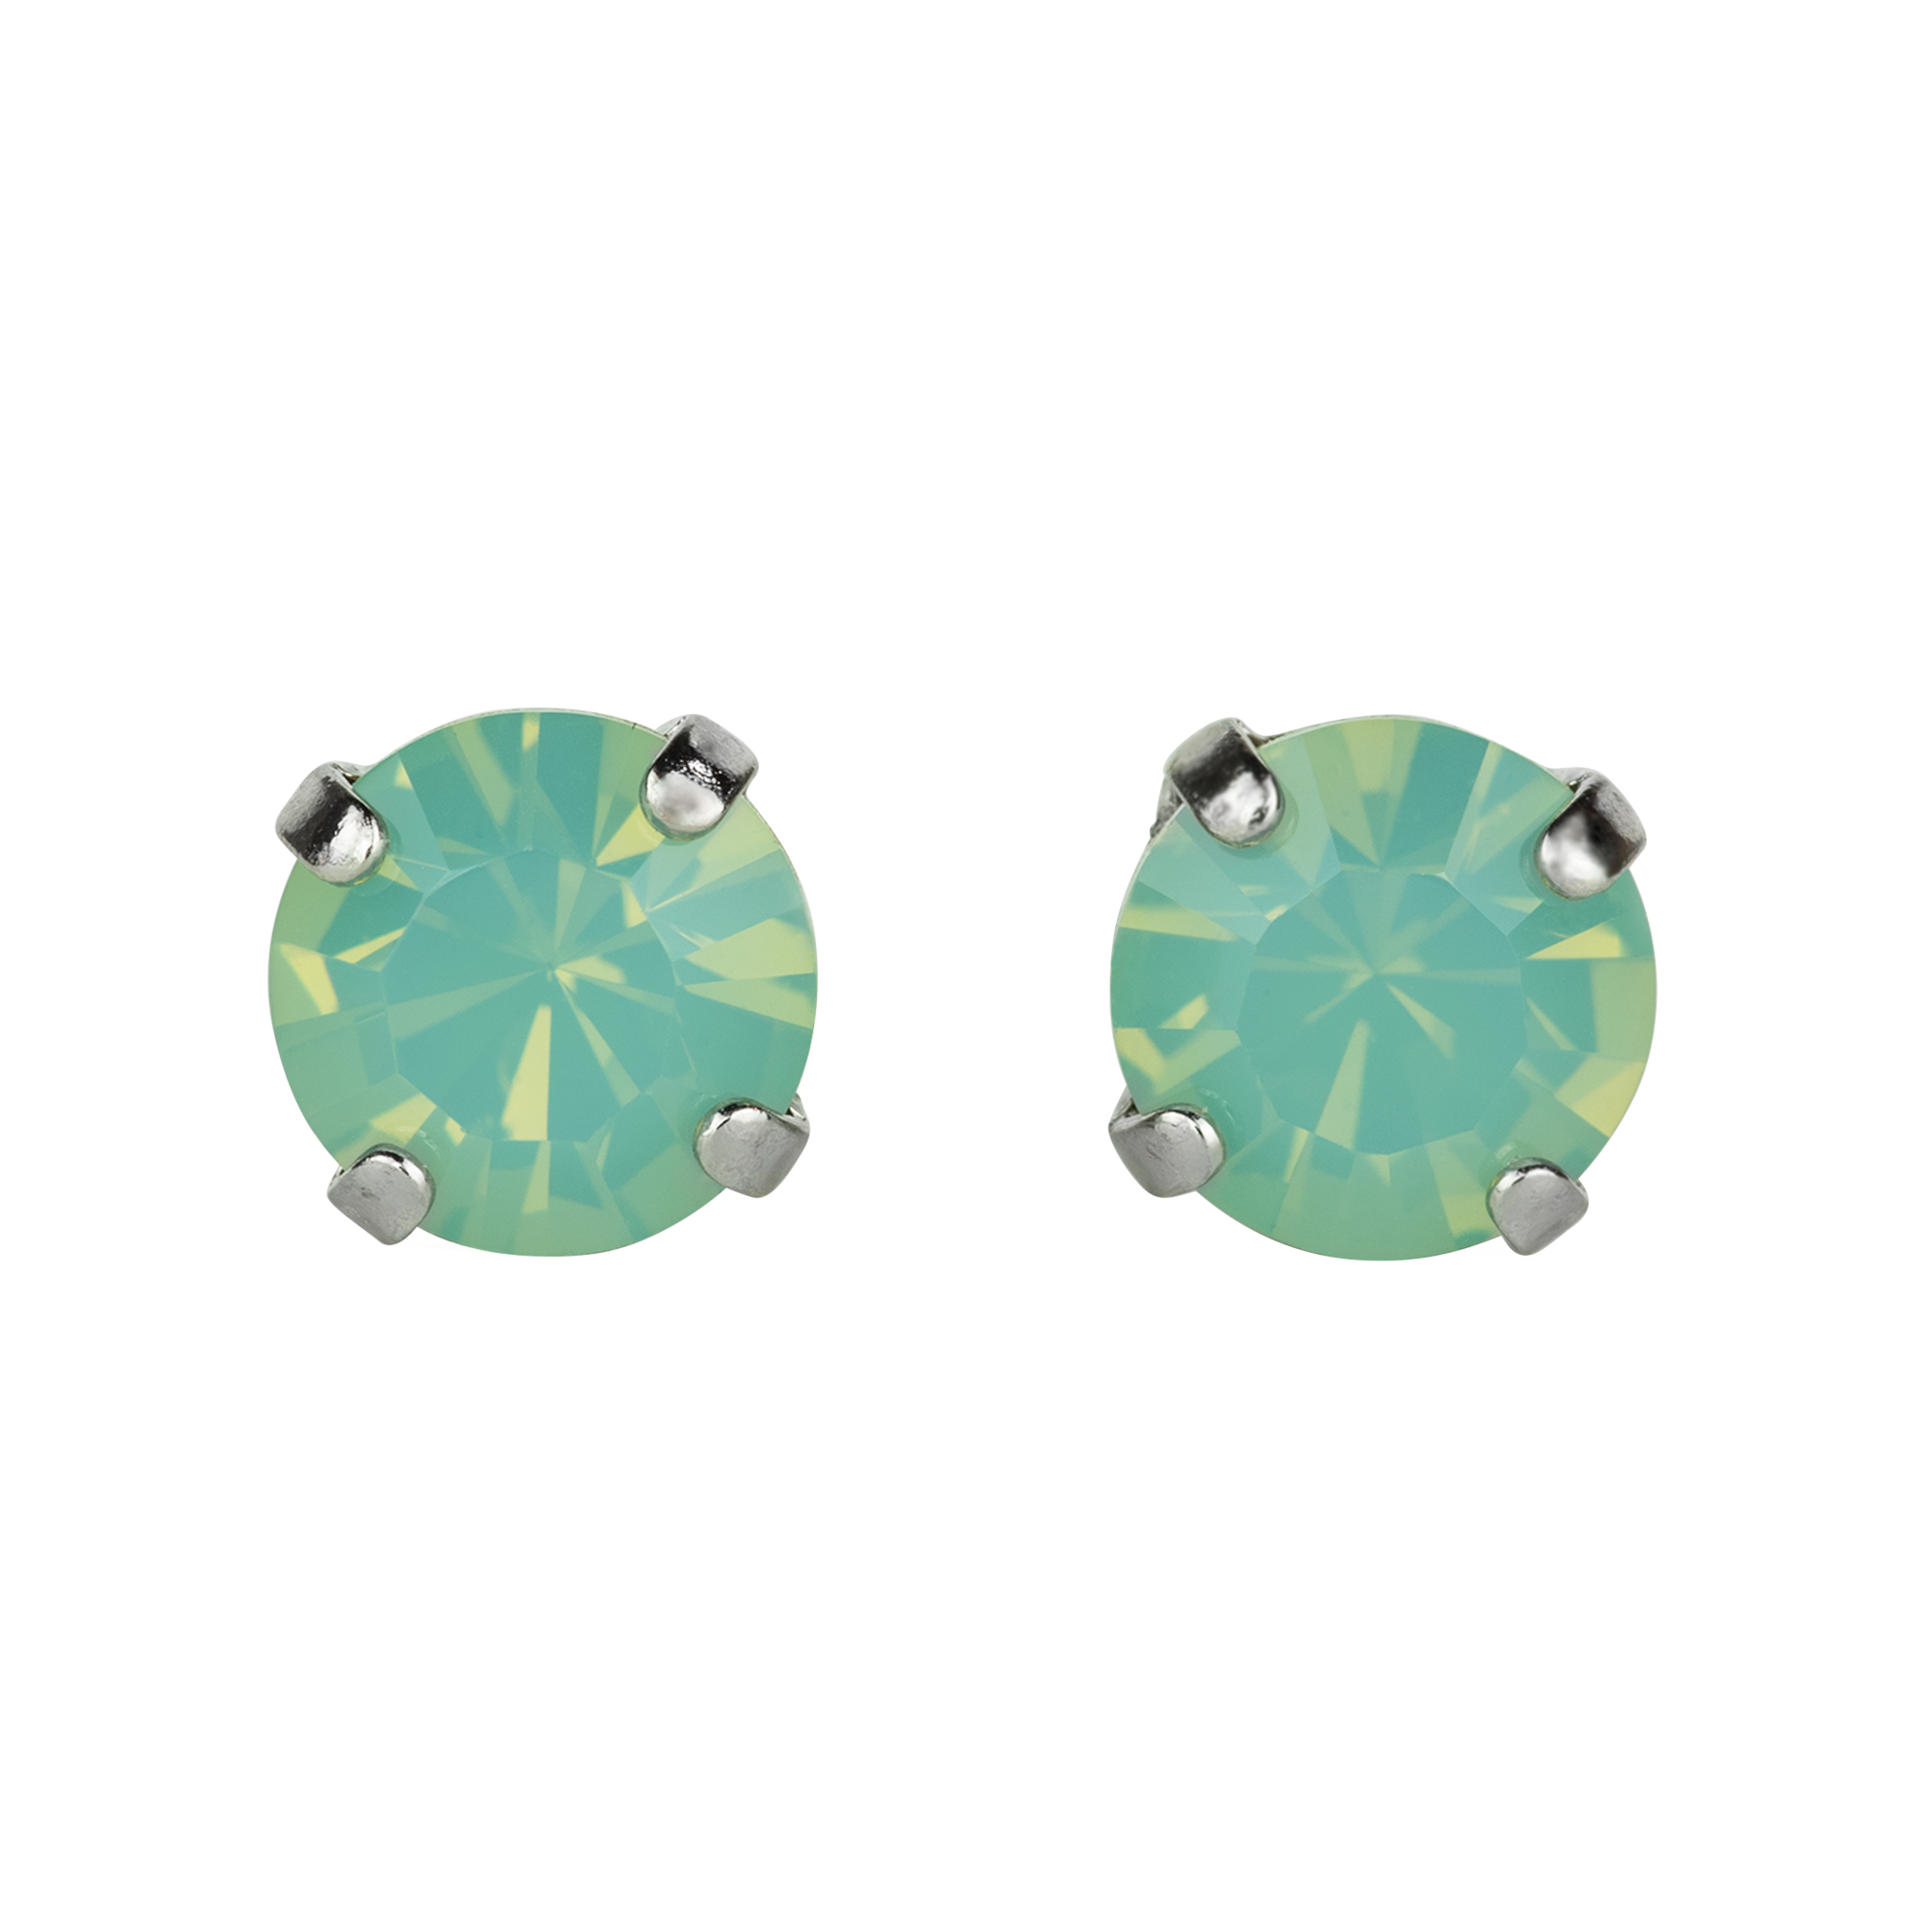 Medium Post Earrings in Pacific Opal *Preorder*